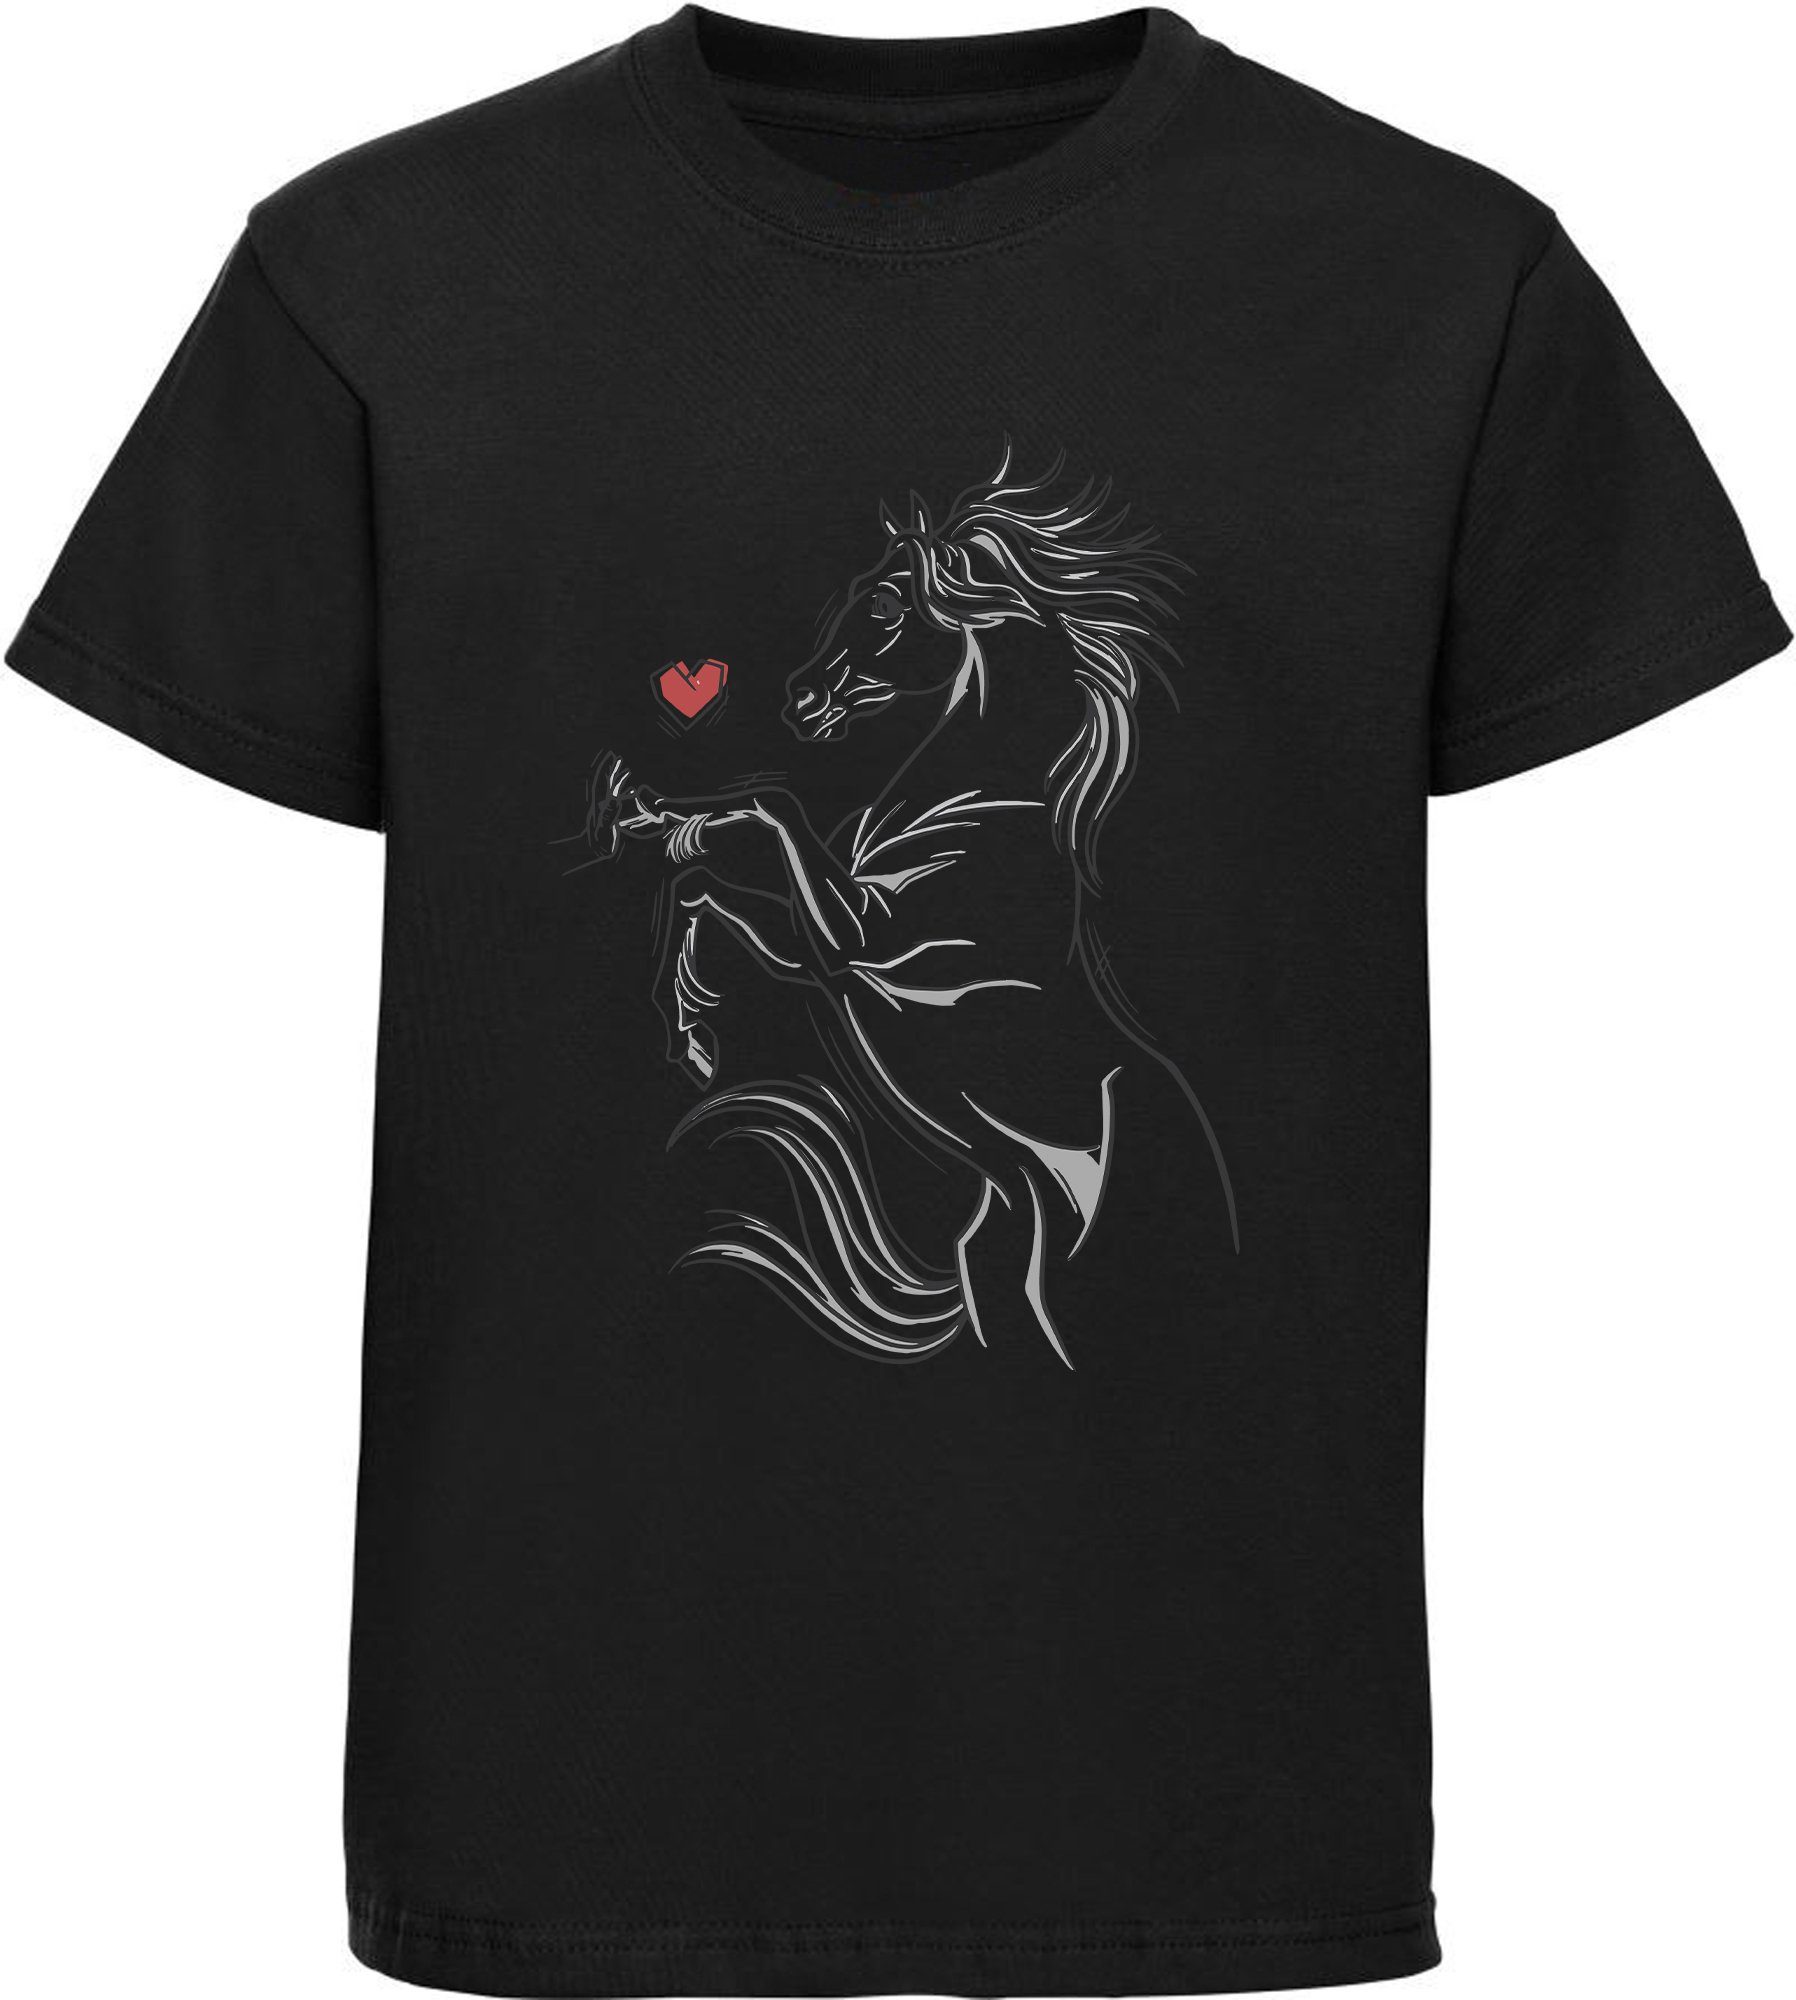 MyDesign24 Print-Shirt bedrucktes Mädchen T-Shirt Pferd das eine Hand berührt Baumwollshirt mit Aufdruck, i159 schwarz